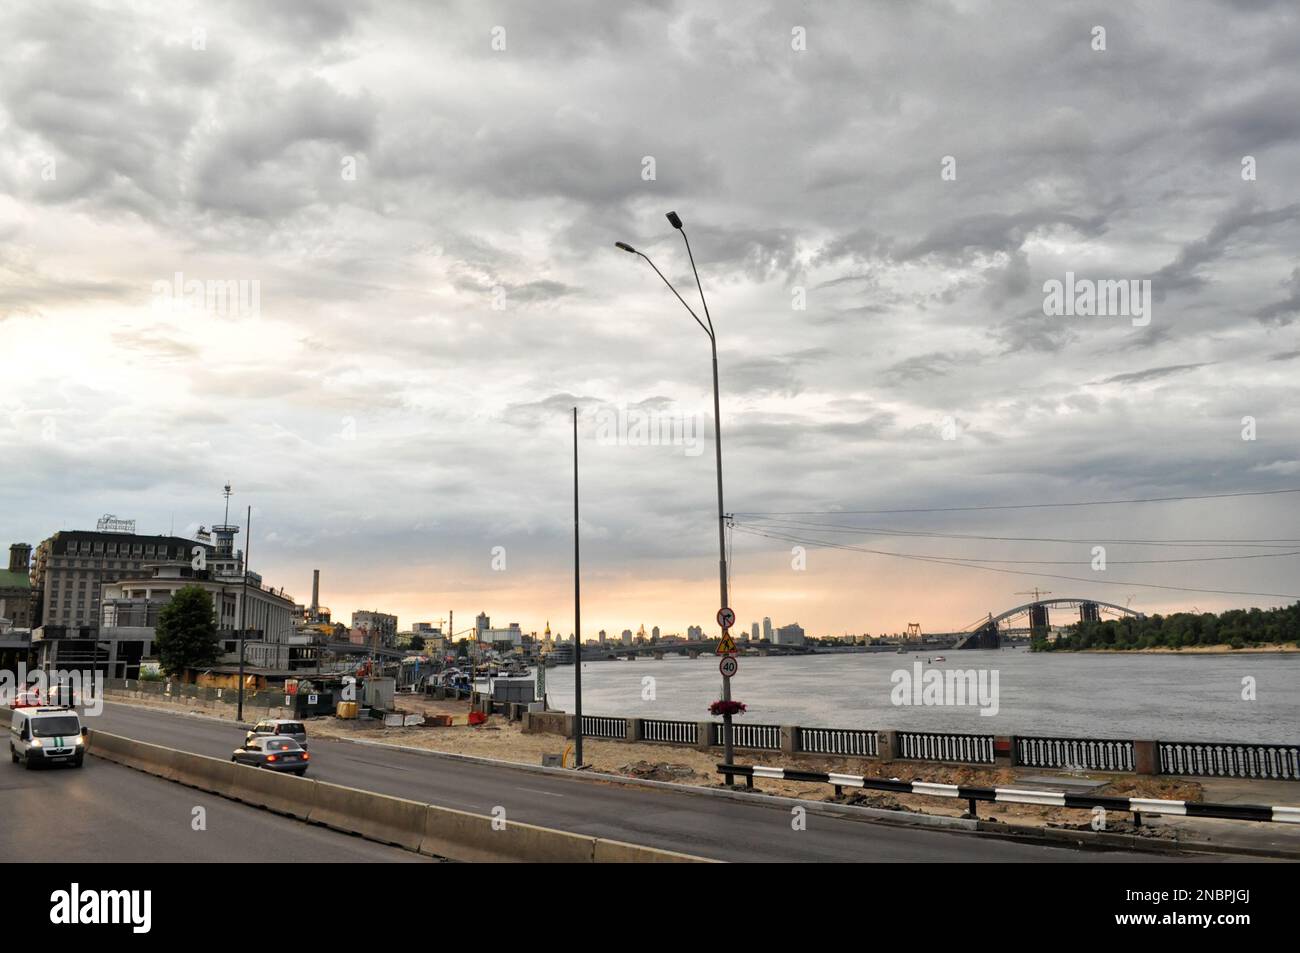 Kiev, Ukraine. 19 juillet. 2014. Panorama du remblai du Dnieper, de l'autoroute et du pont piétonnier. Temps nuageux avec ciel spectaculaire. Banque D'Images